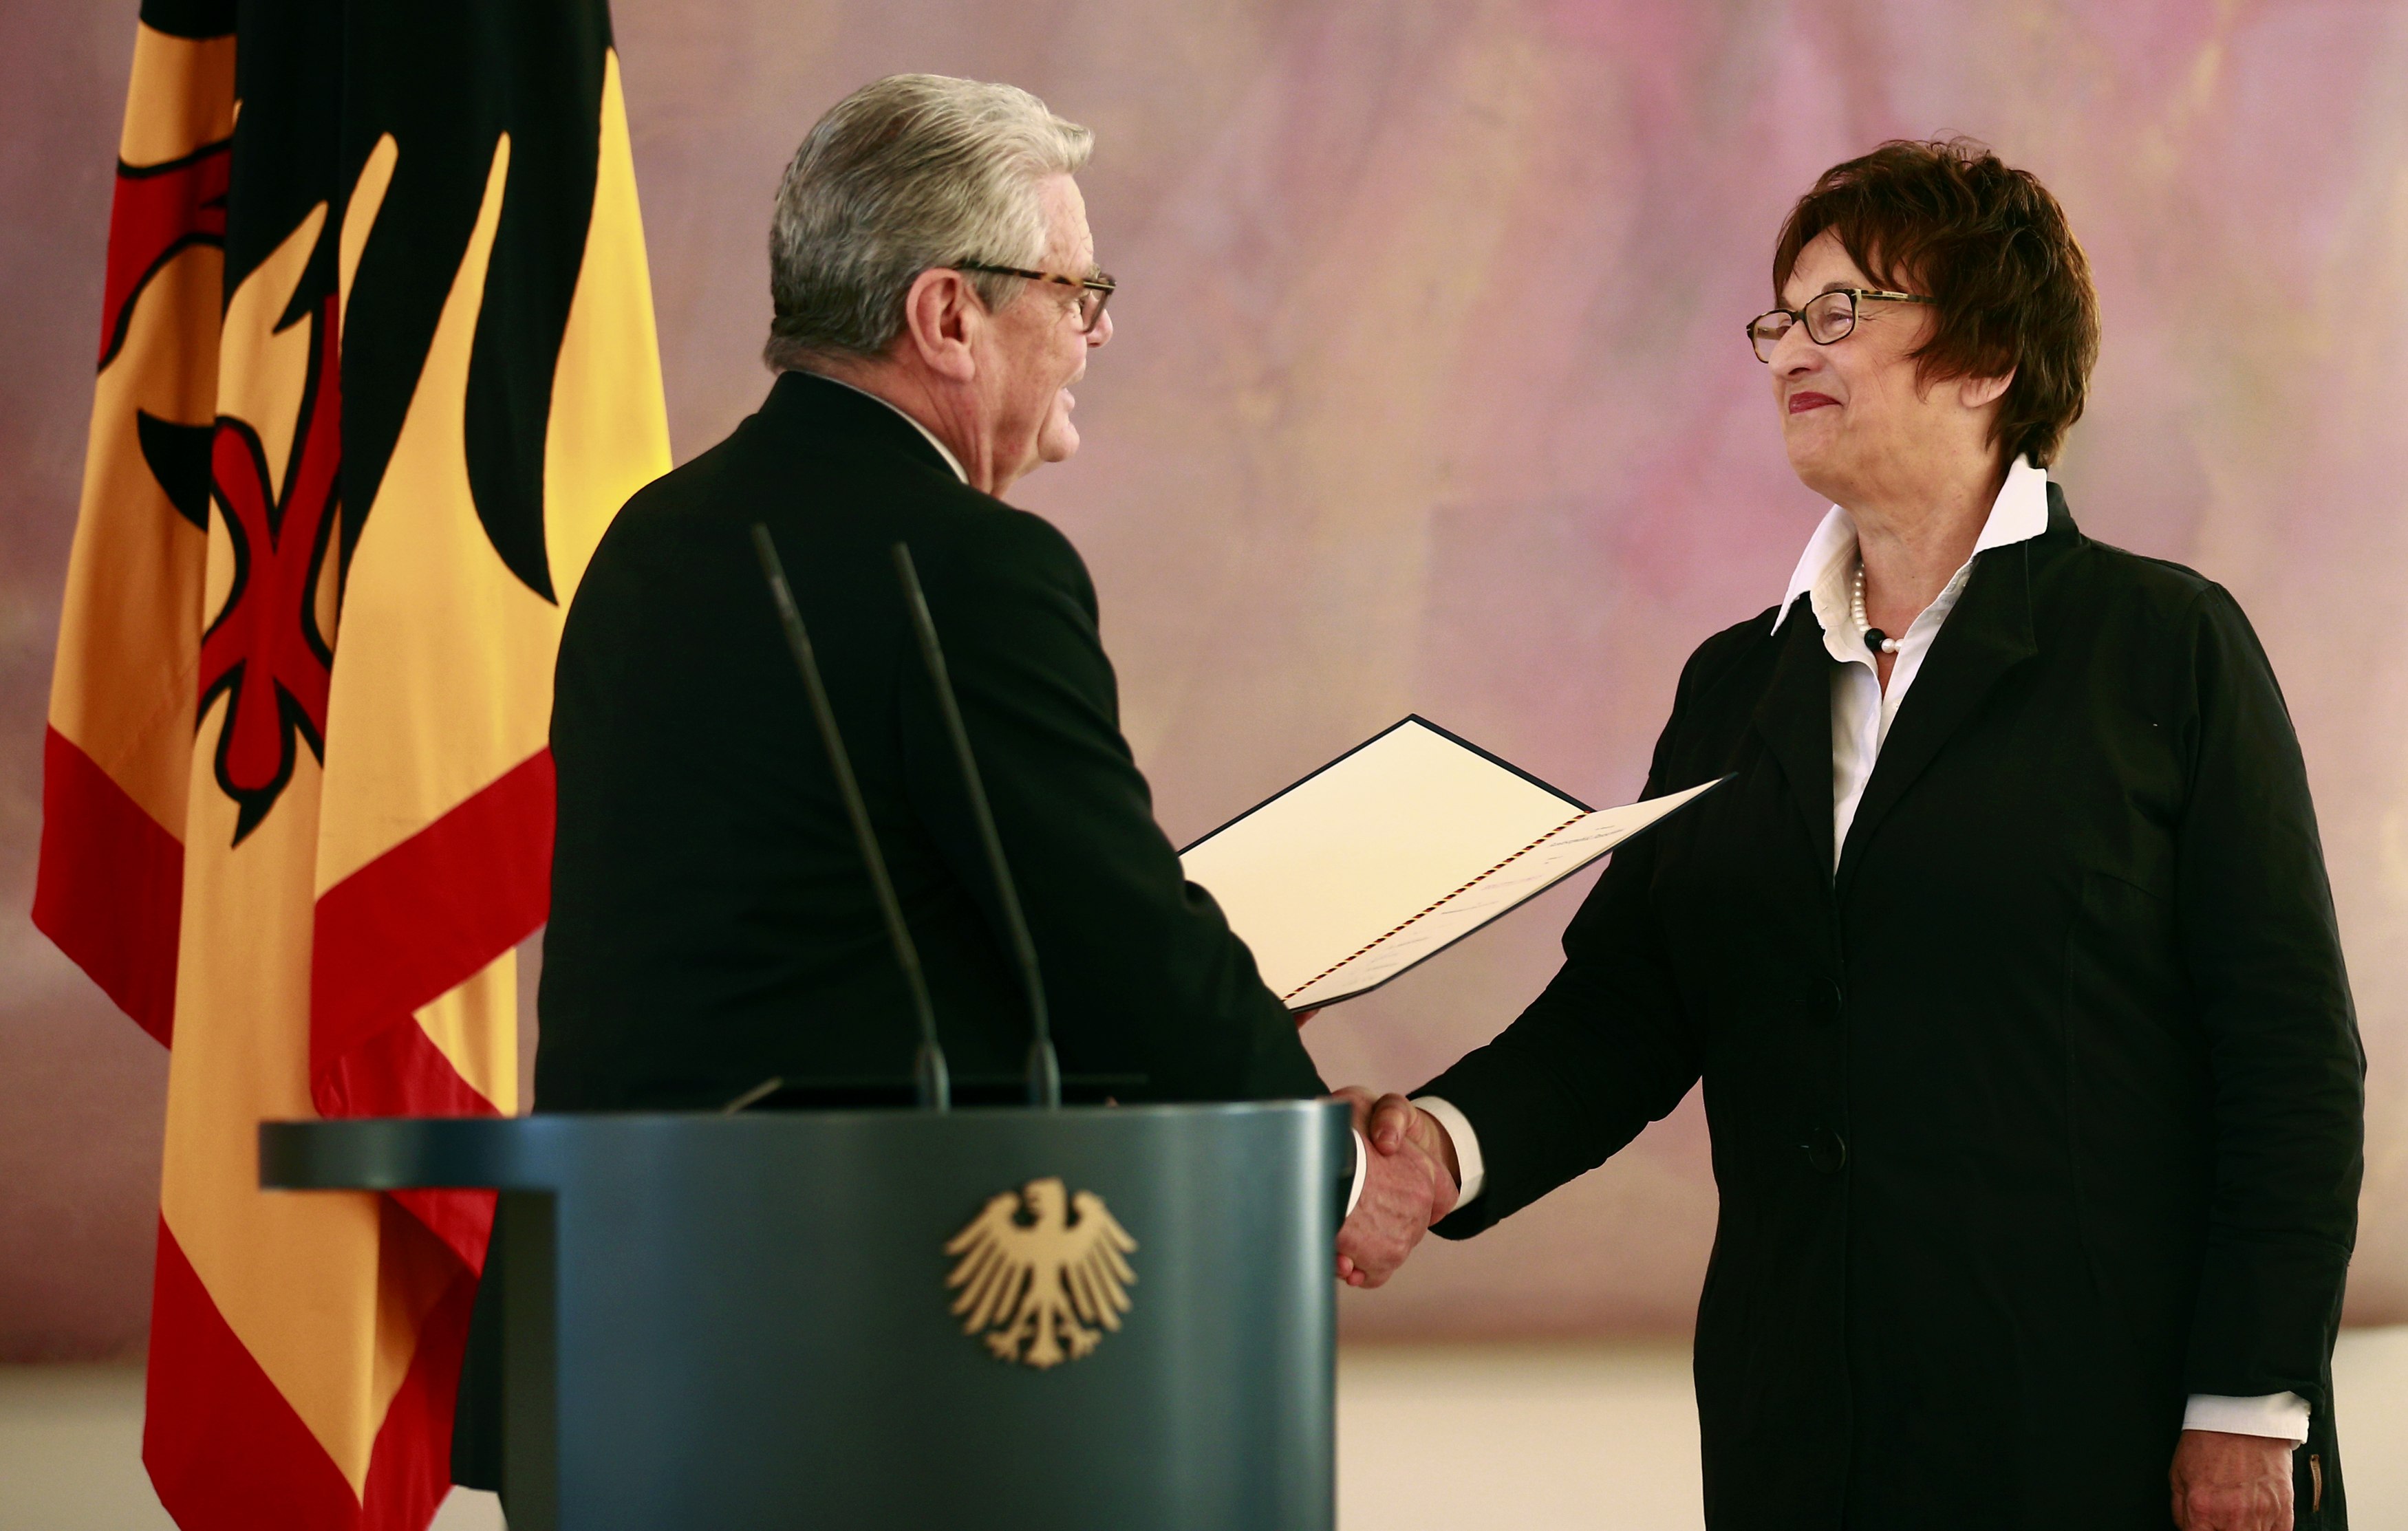 بريجيت تسيبريس تتسلم شهادة من تعيينها فى منصب وزير الاقتصاد من الرئيس الألمانى